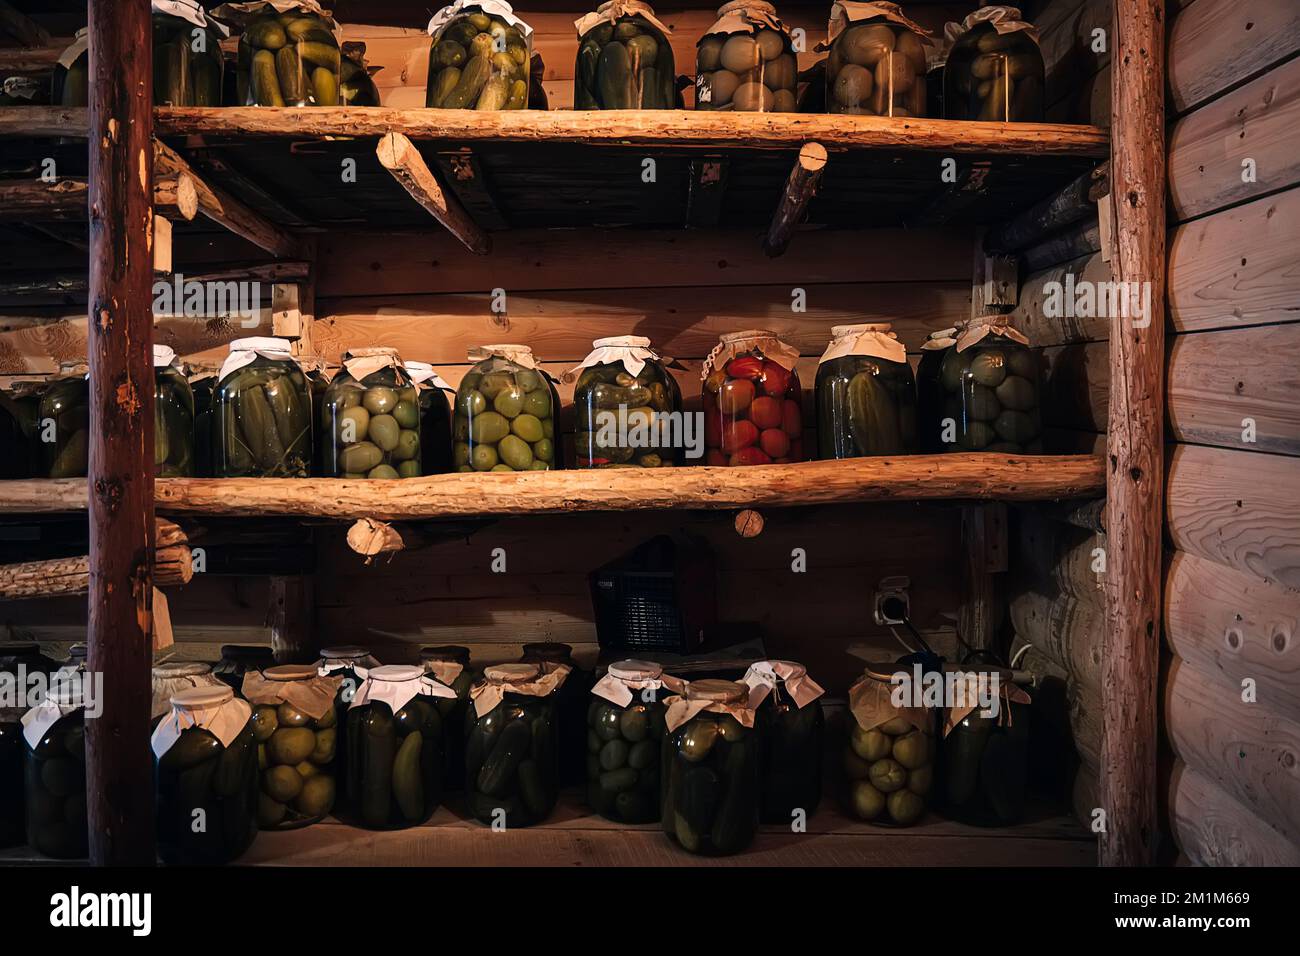 Conservazione delle verdure in una cantina calda per il periodo invernale. Vasetti di vetro con cetrioli sottaceto sulla mensola. Foto Stock